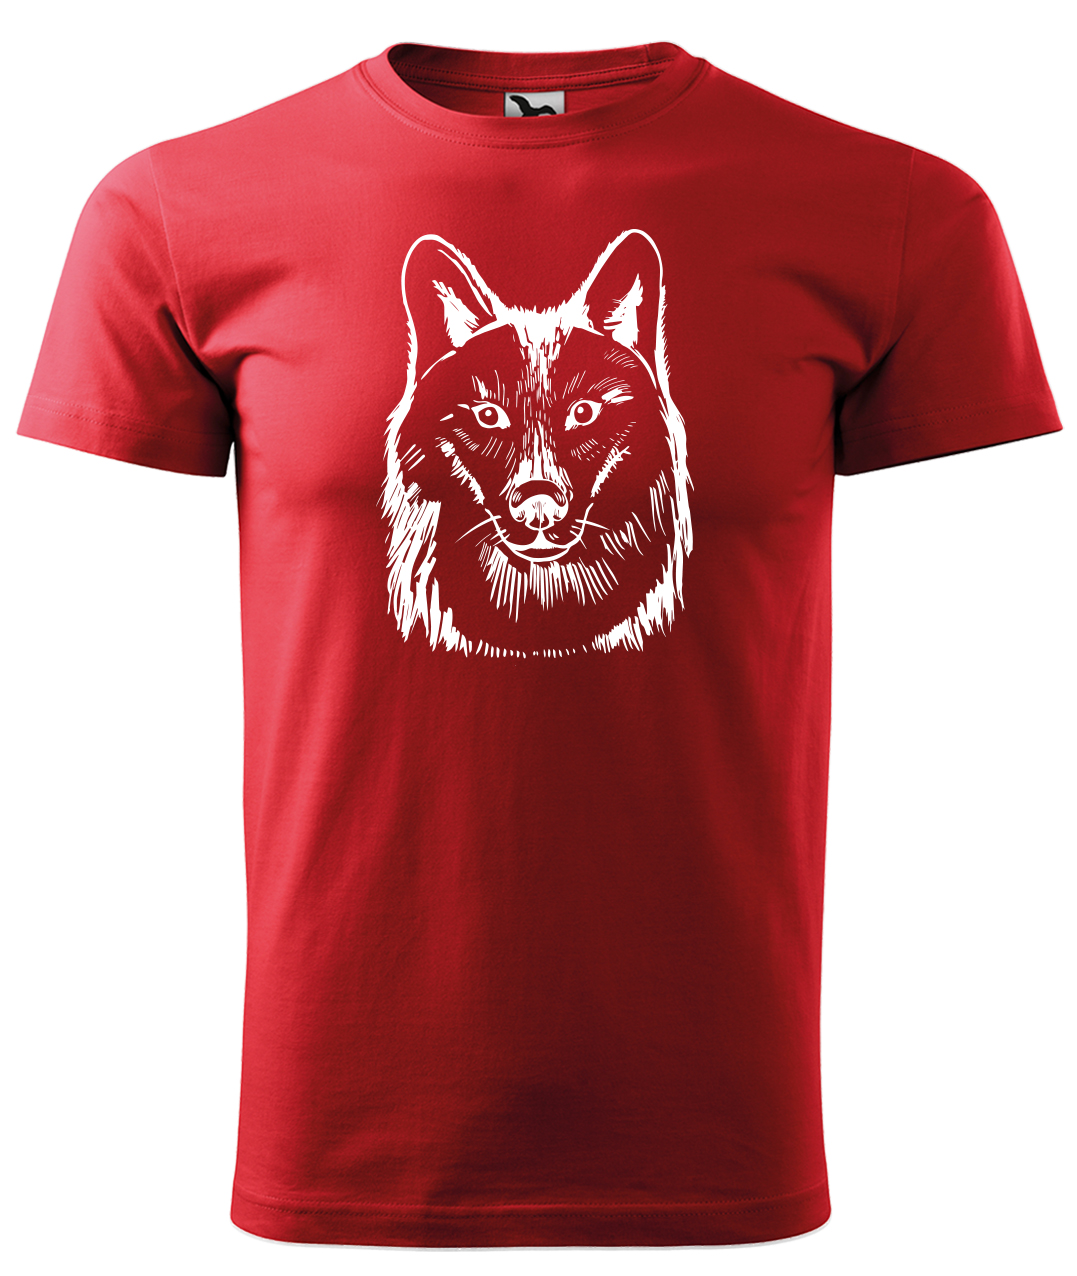 Dětské tričko s vlkem - Kresba vlka Velikost: 6 let / 122 cm, Barva: Červená (07), Délka rukávu: Krátký rukáv